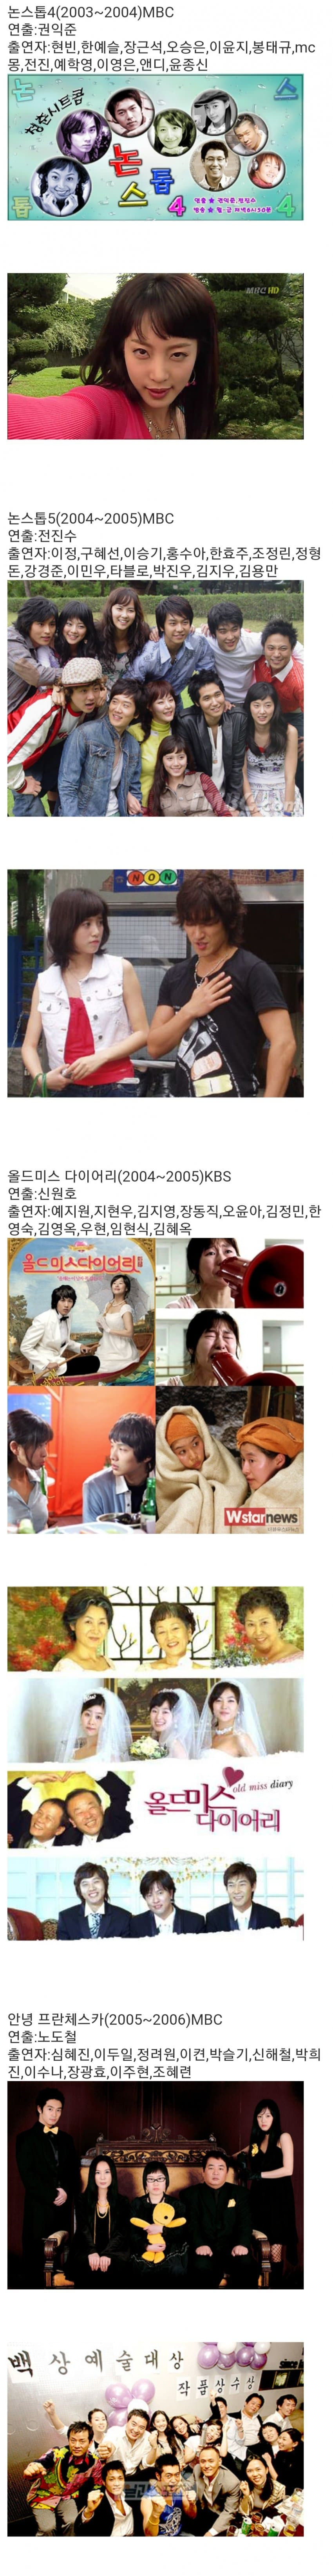 한국 시트콤 흥행작 계보